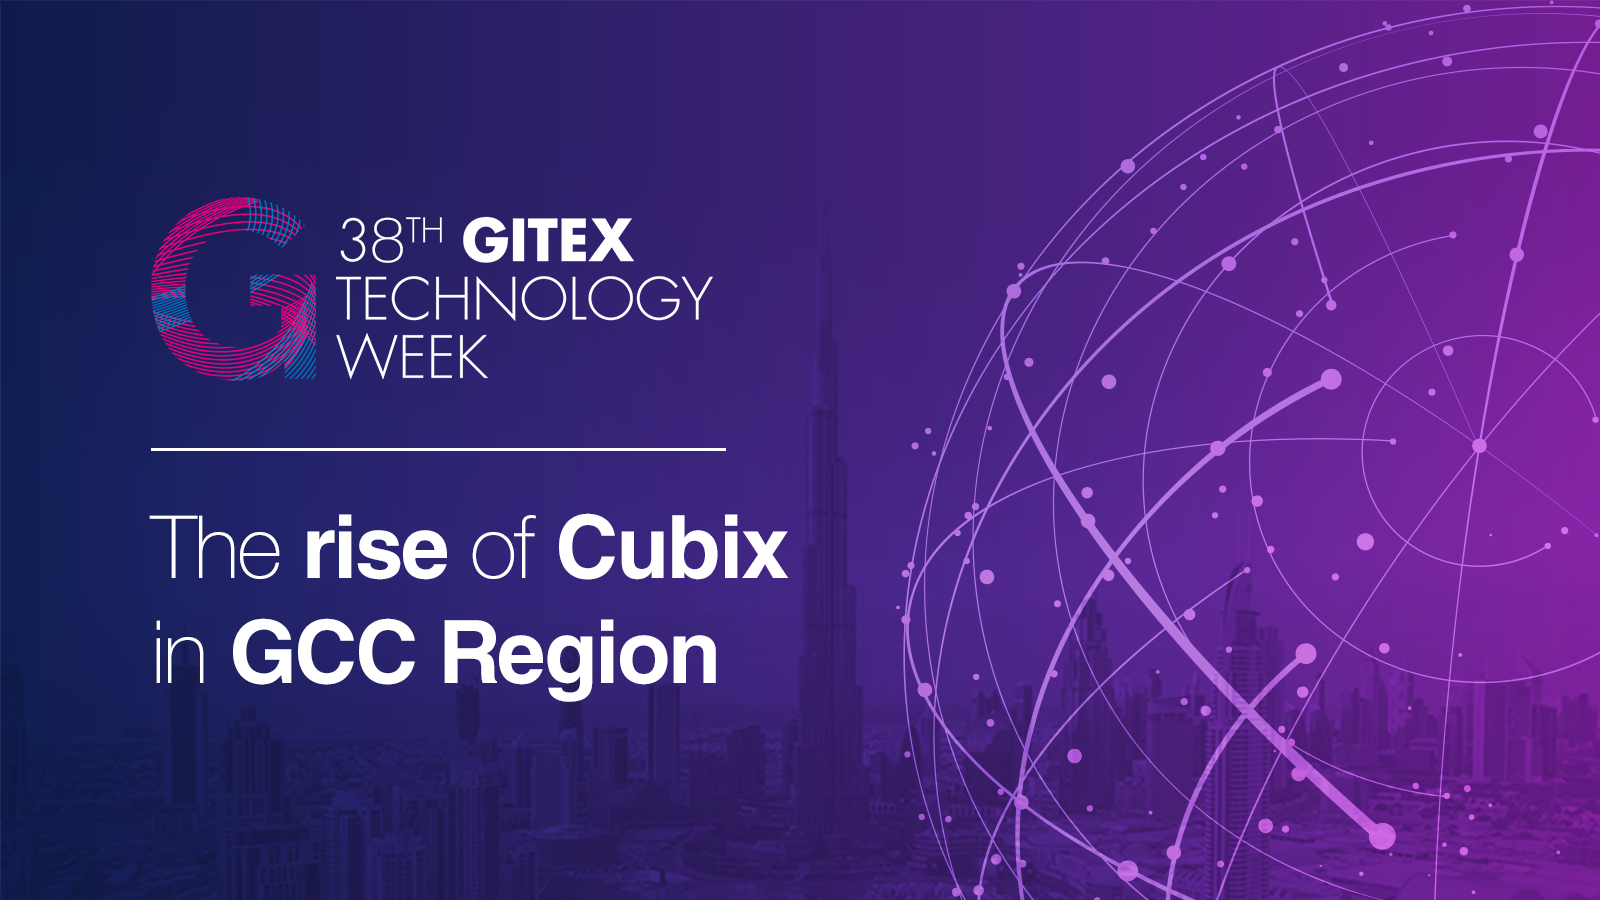 38th GITEX 2018 – Cubevaganza for Cubix